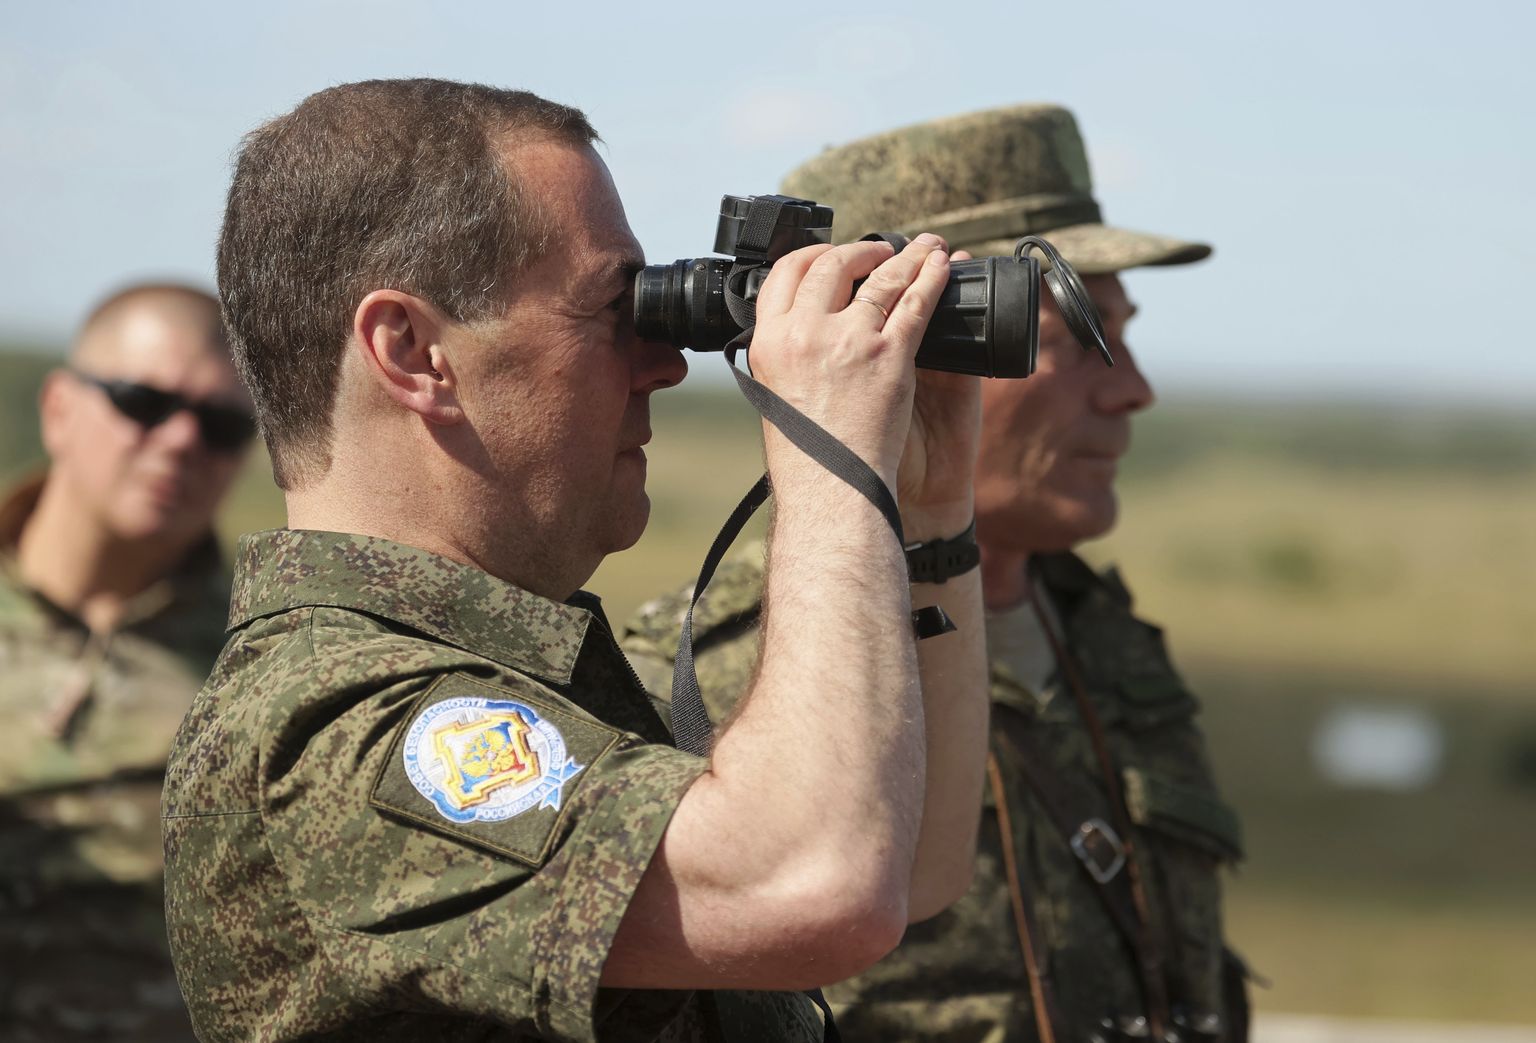 Venemaa julgeolekunõukogu asejuht Dmitri Medvedev külastas 5. augustil 2022 Orenburgi oblastis Totski sõjaväebaasi. Pildil vaatab ta binokliga